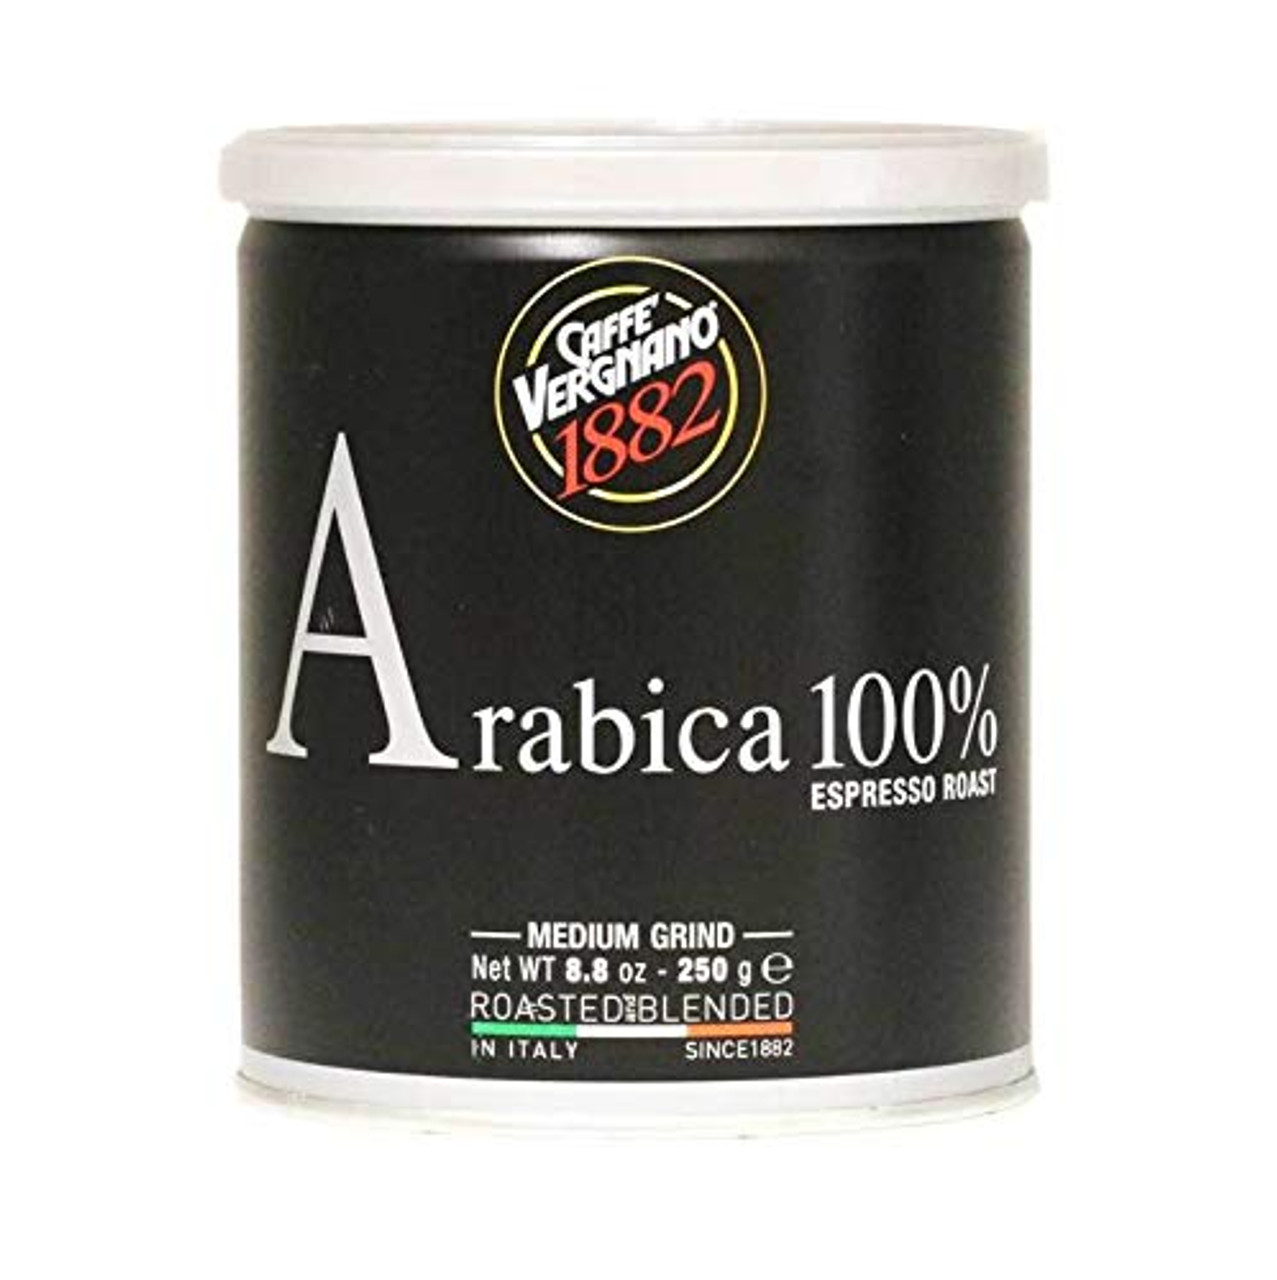 CAFFE VERGNANO ESPRESSO ROAST 100% ARABIC GROUND COFFEE IN TIN - MEDIUM  GRIND, 8.8 OZ